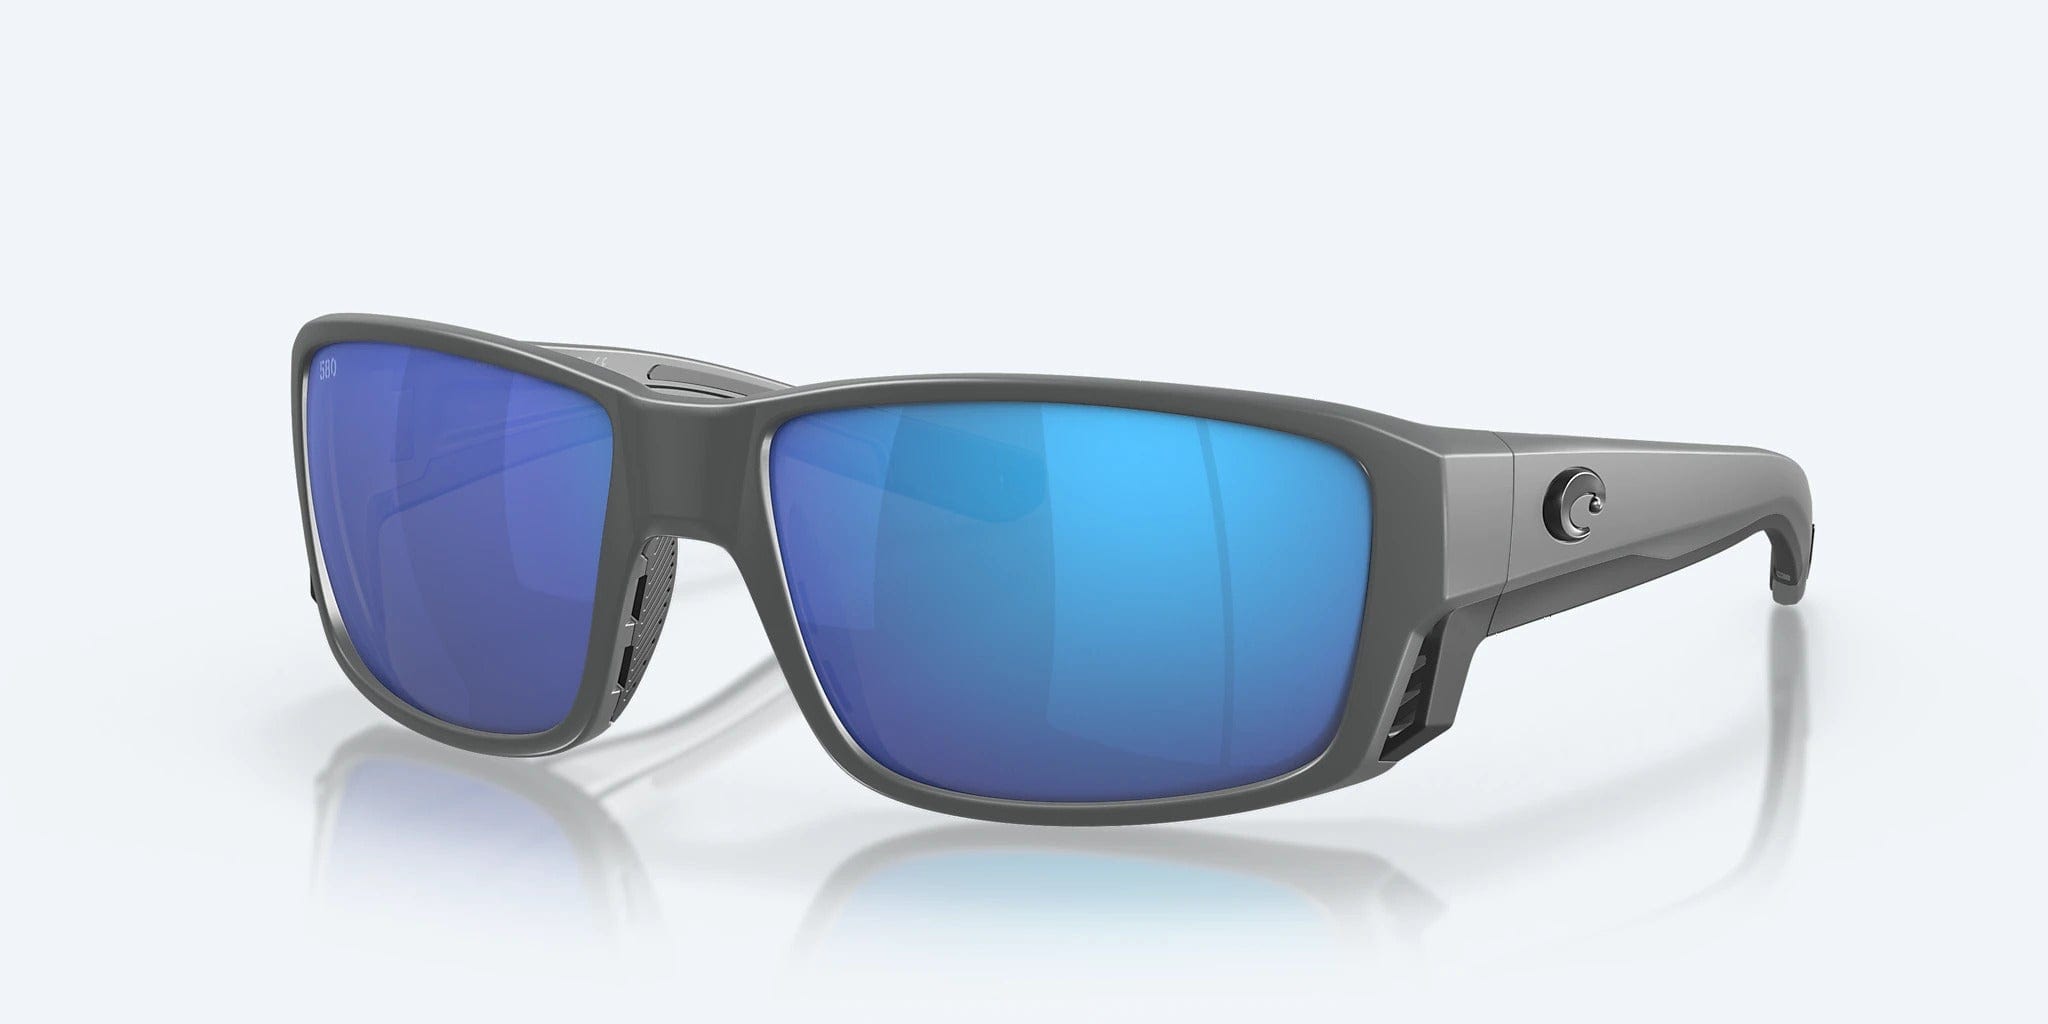 Costa Tuna Alley Pro Sunglasses - Matte Gray/Green Mirror 580G